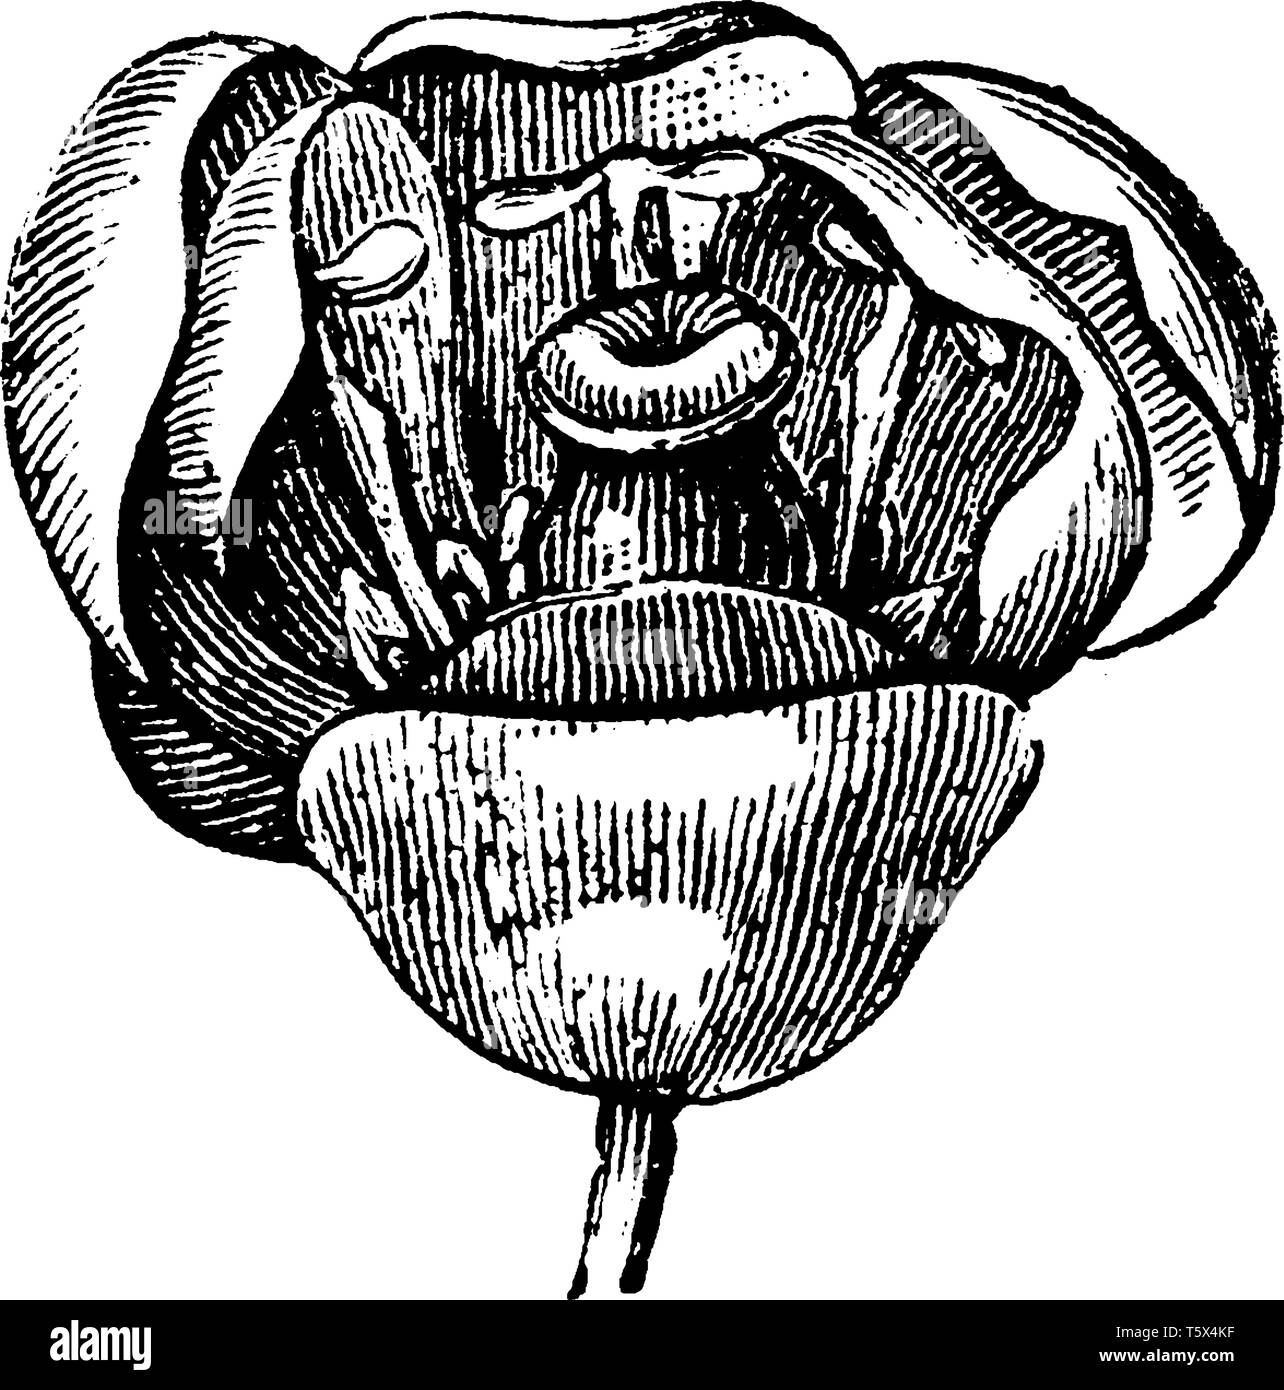 Berry ont de nombreuses fleurs rangée pétale avec trois petits sépales. Les pétales sont disposées le long d'une ligne centrale de la stigmatisation, vintage ou dessin gravure illustration. Illustration de Vecteur